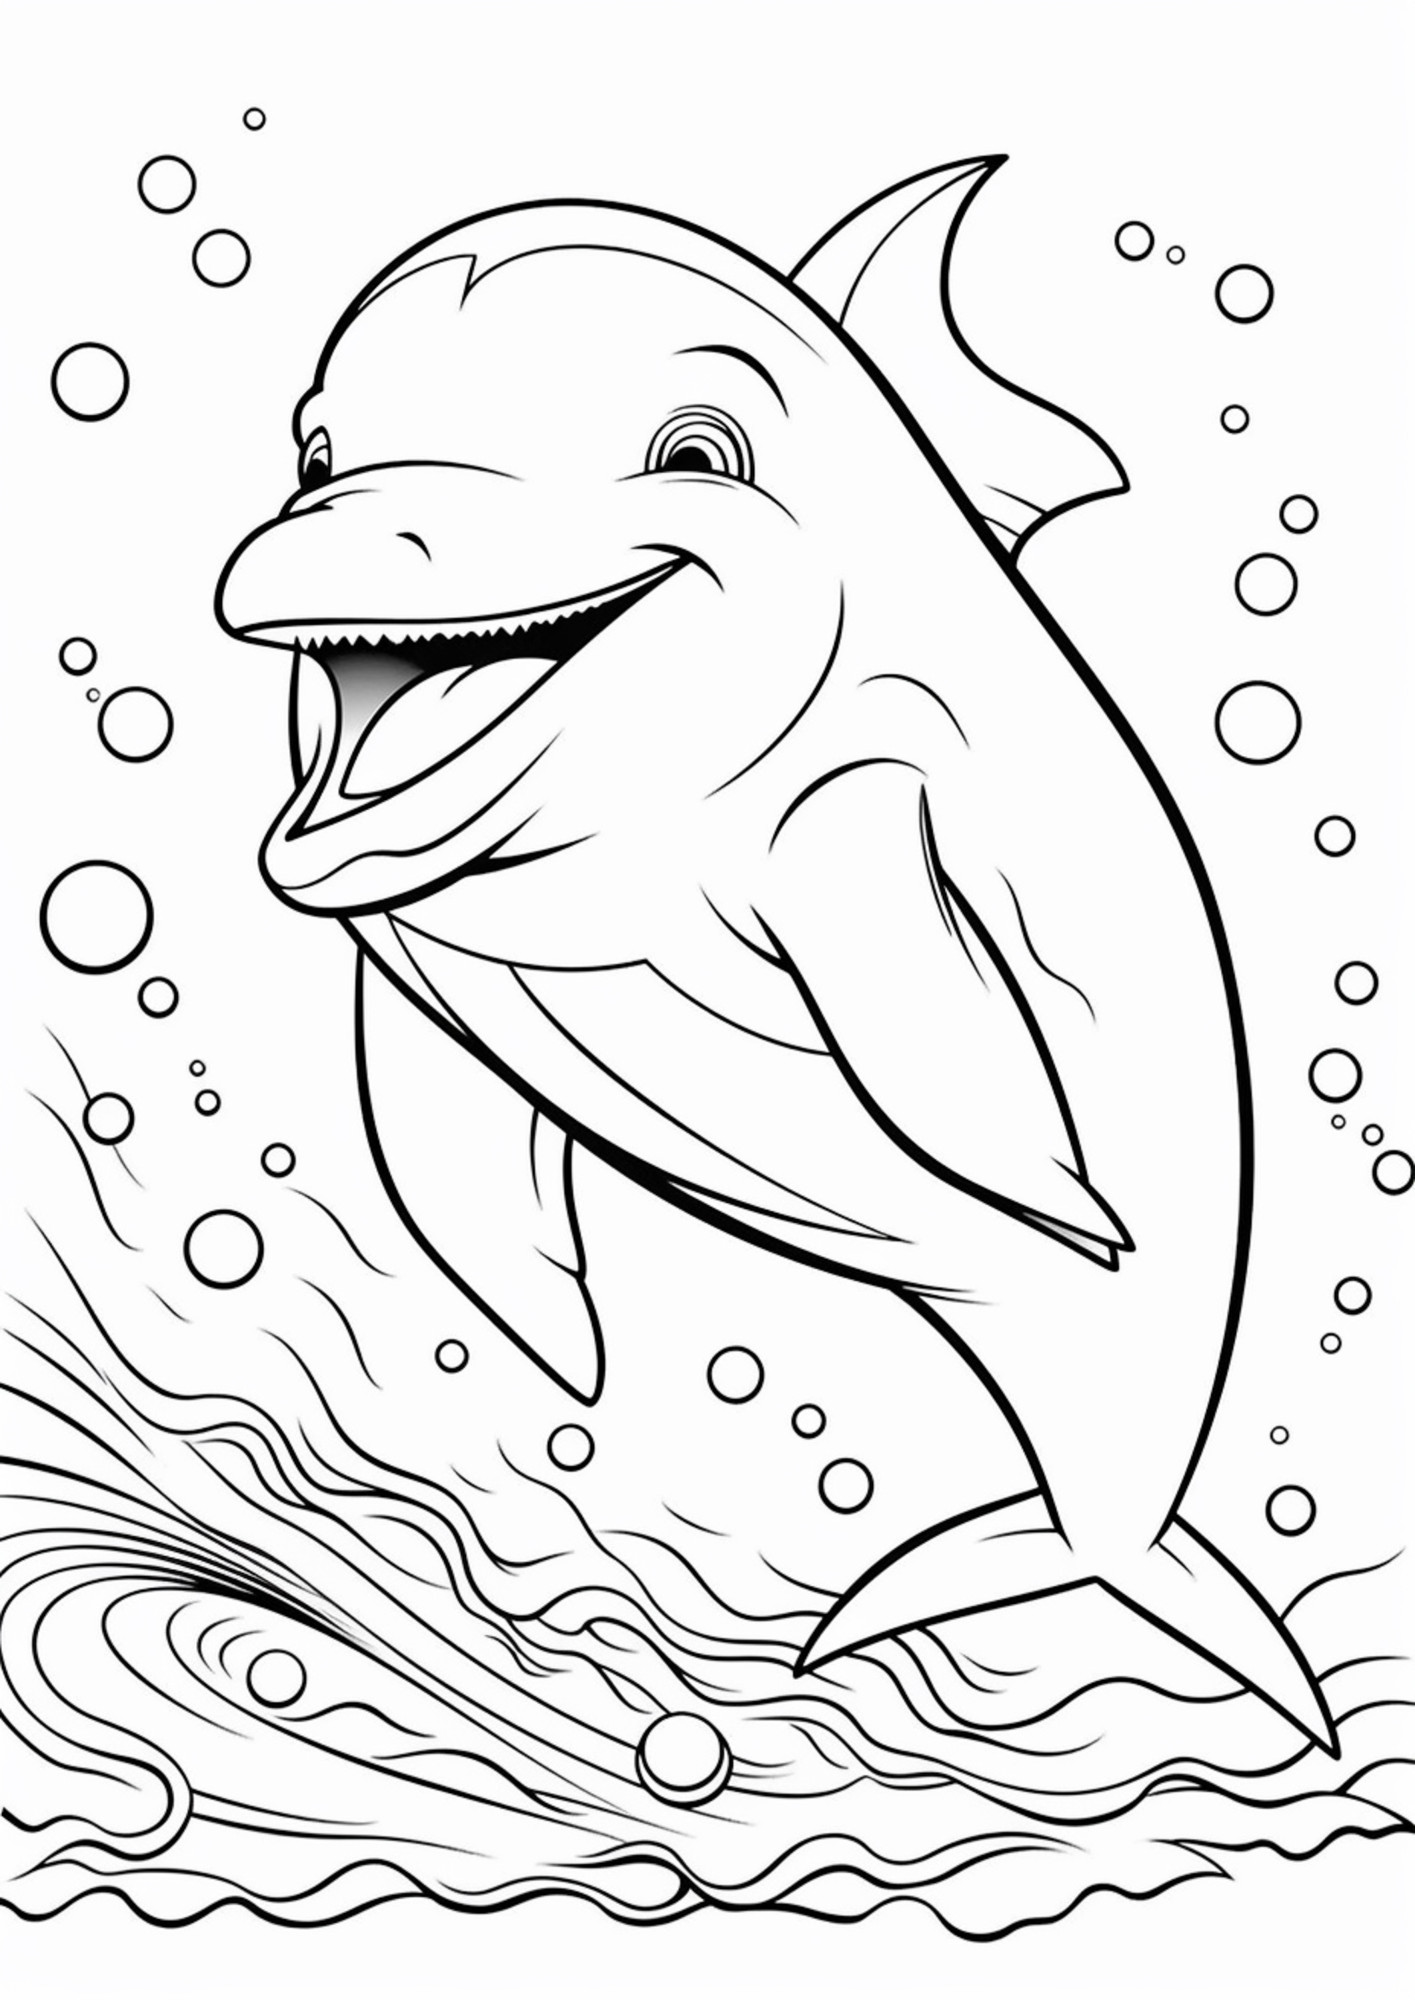 Раскраска для детей: дельфин улыбается во время плавания в океане